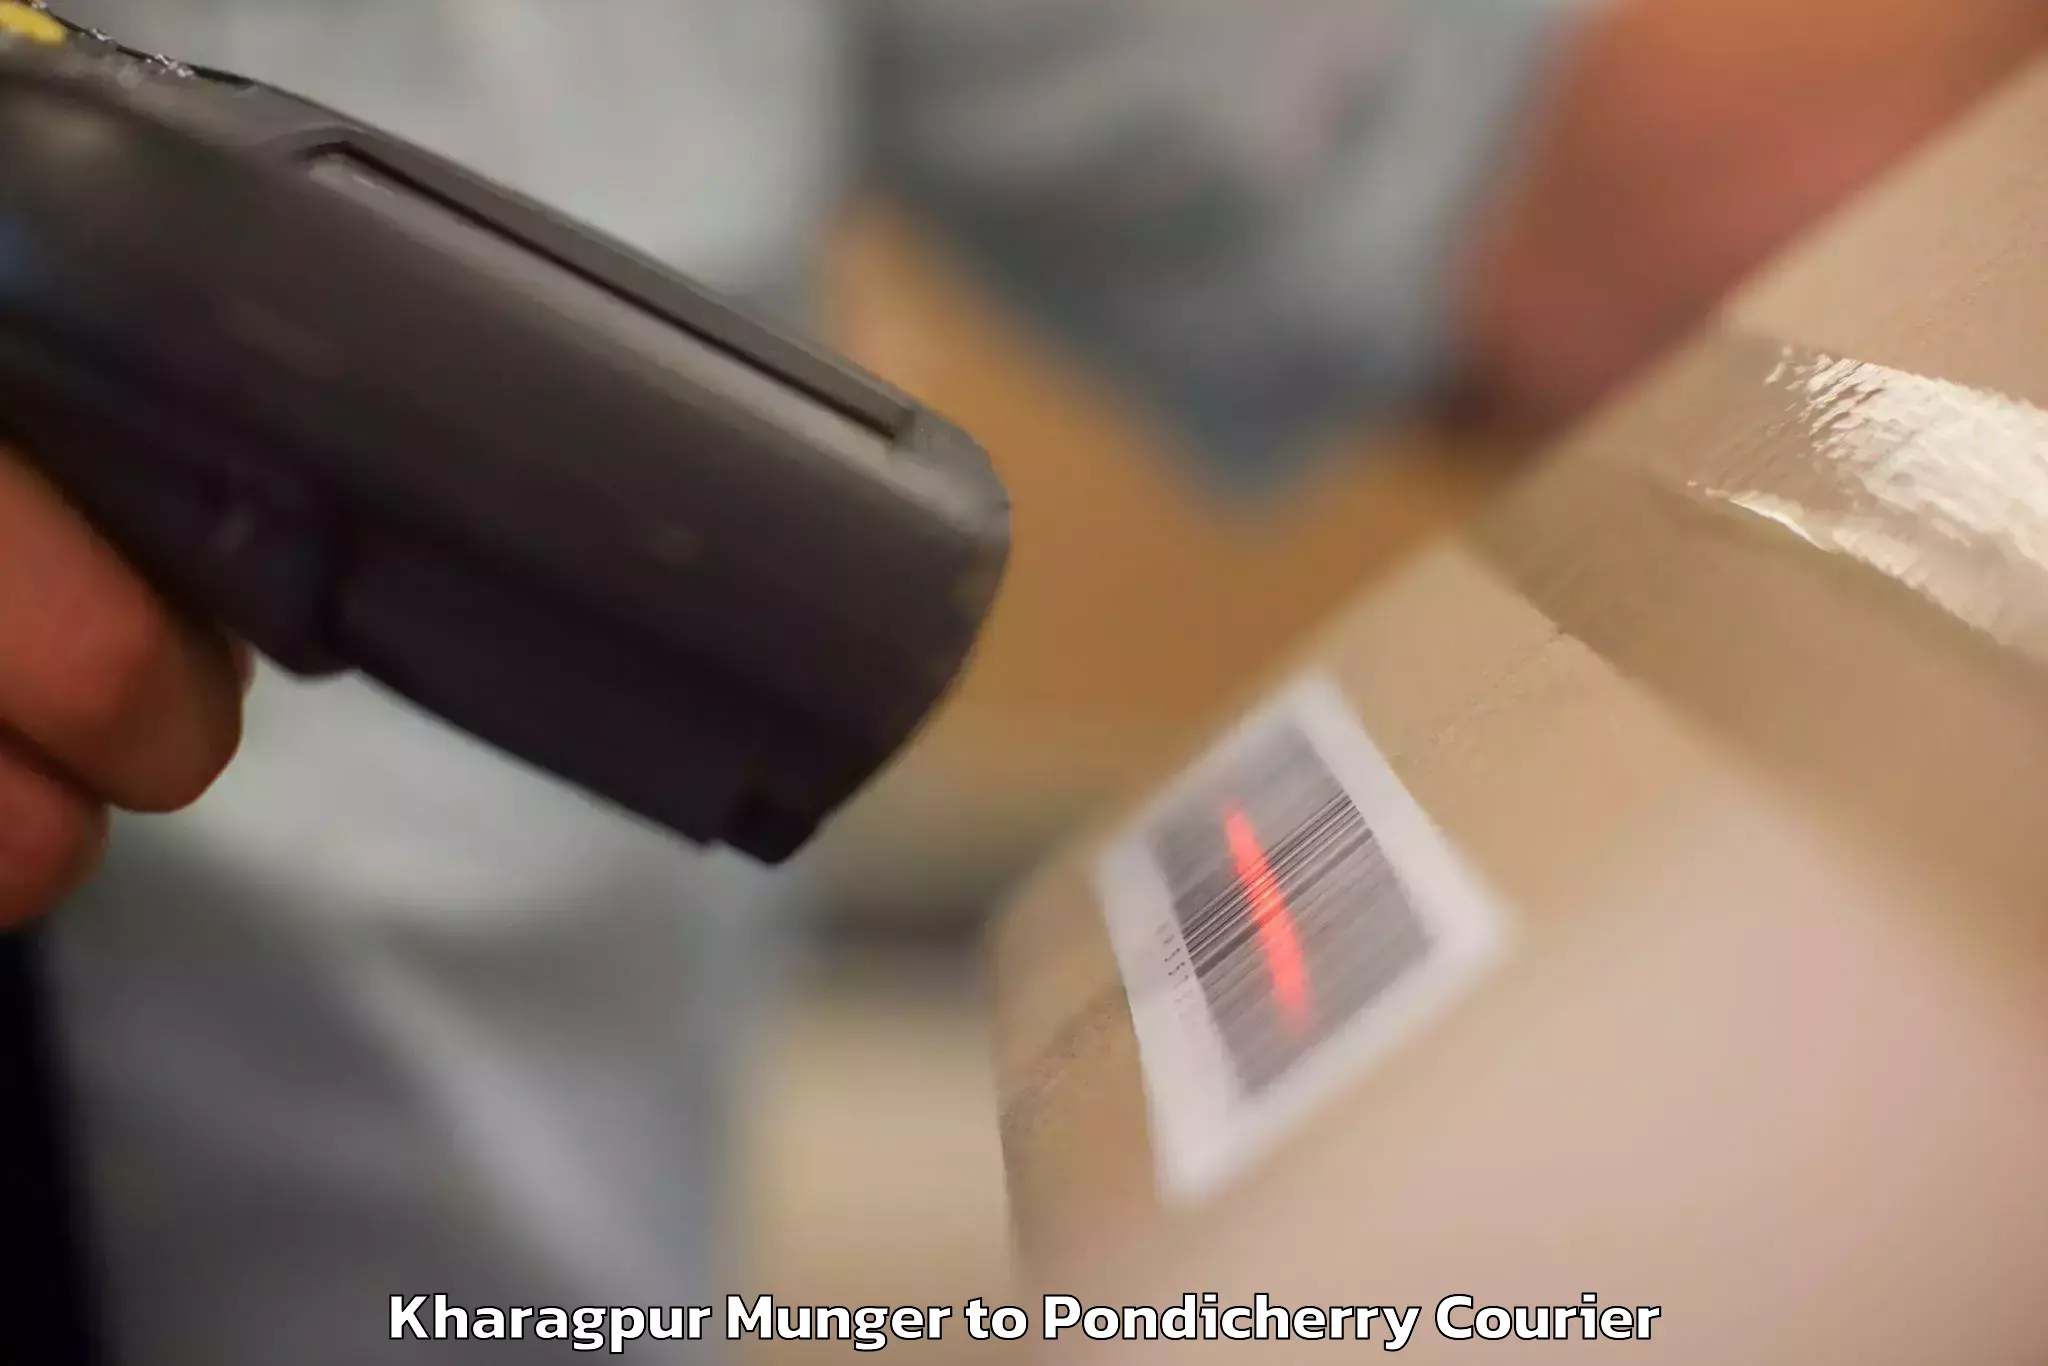 Baggage transport innovation Kharagpur Munger to NIT Puducherry